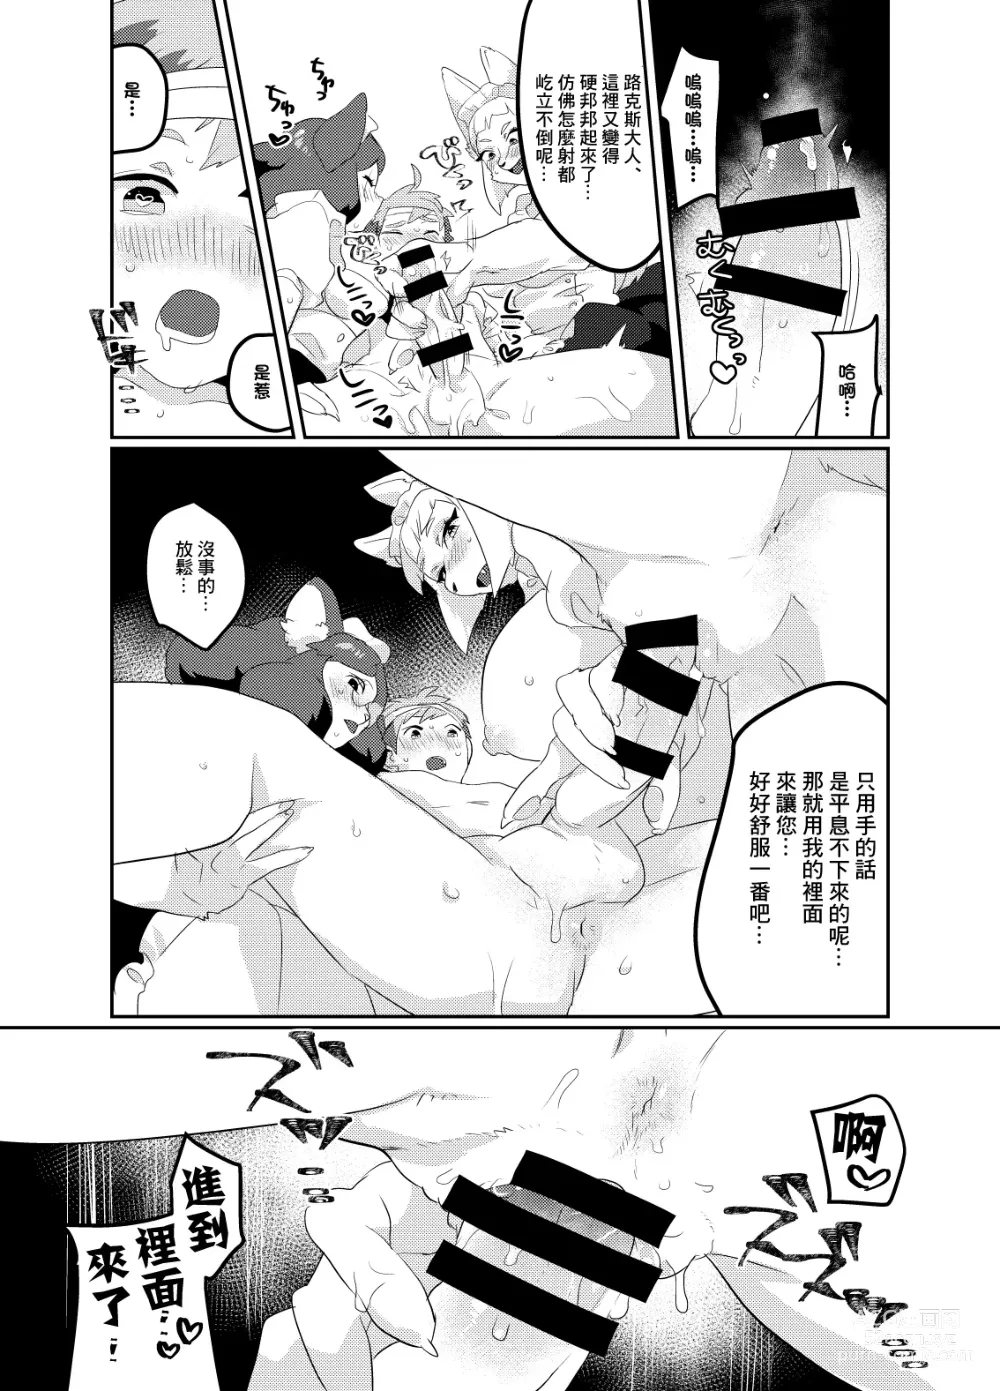 Page 44 of doujinshi Meido inHEAVEN